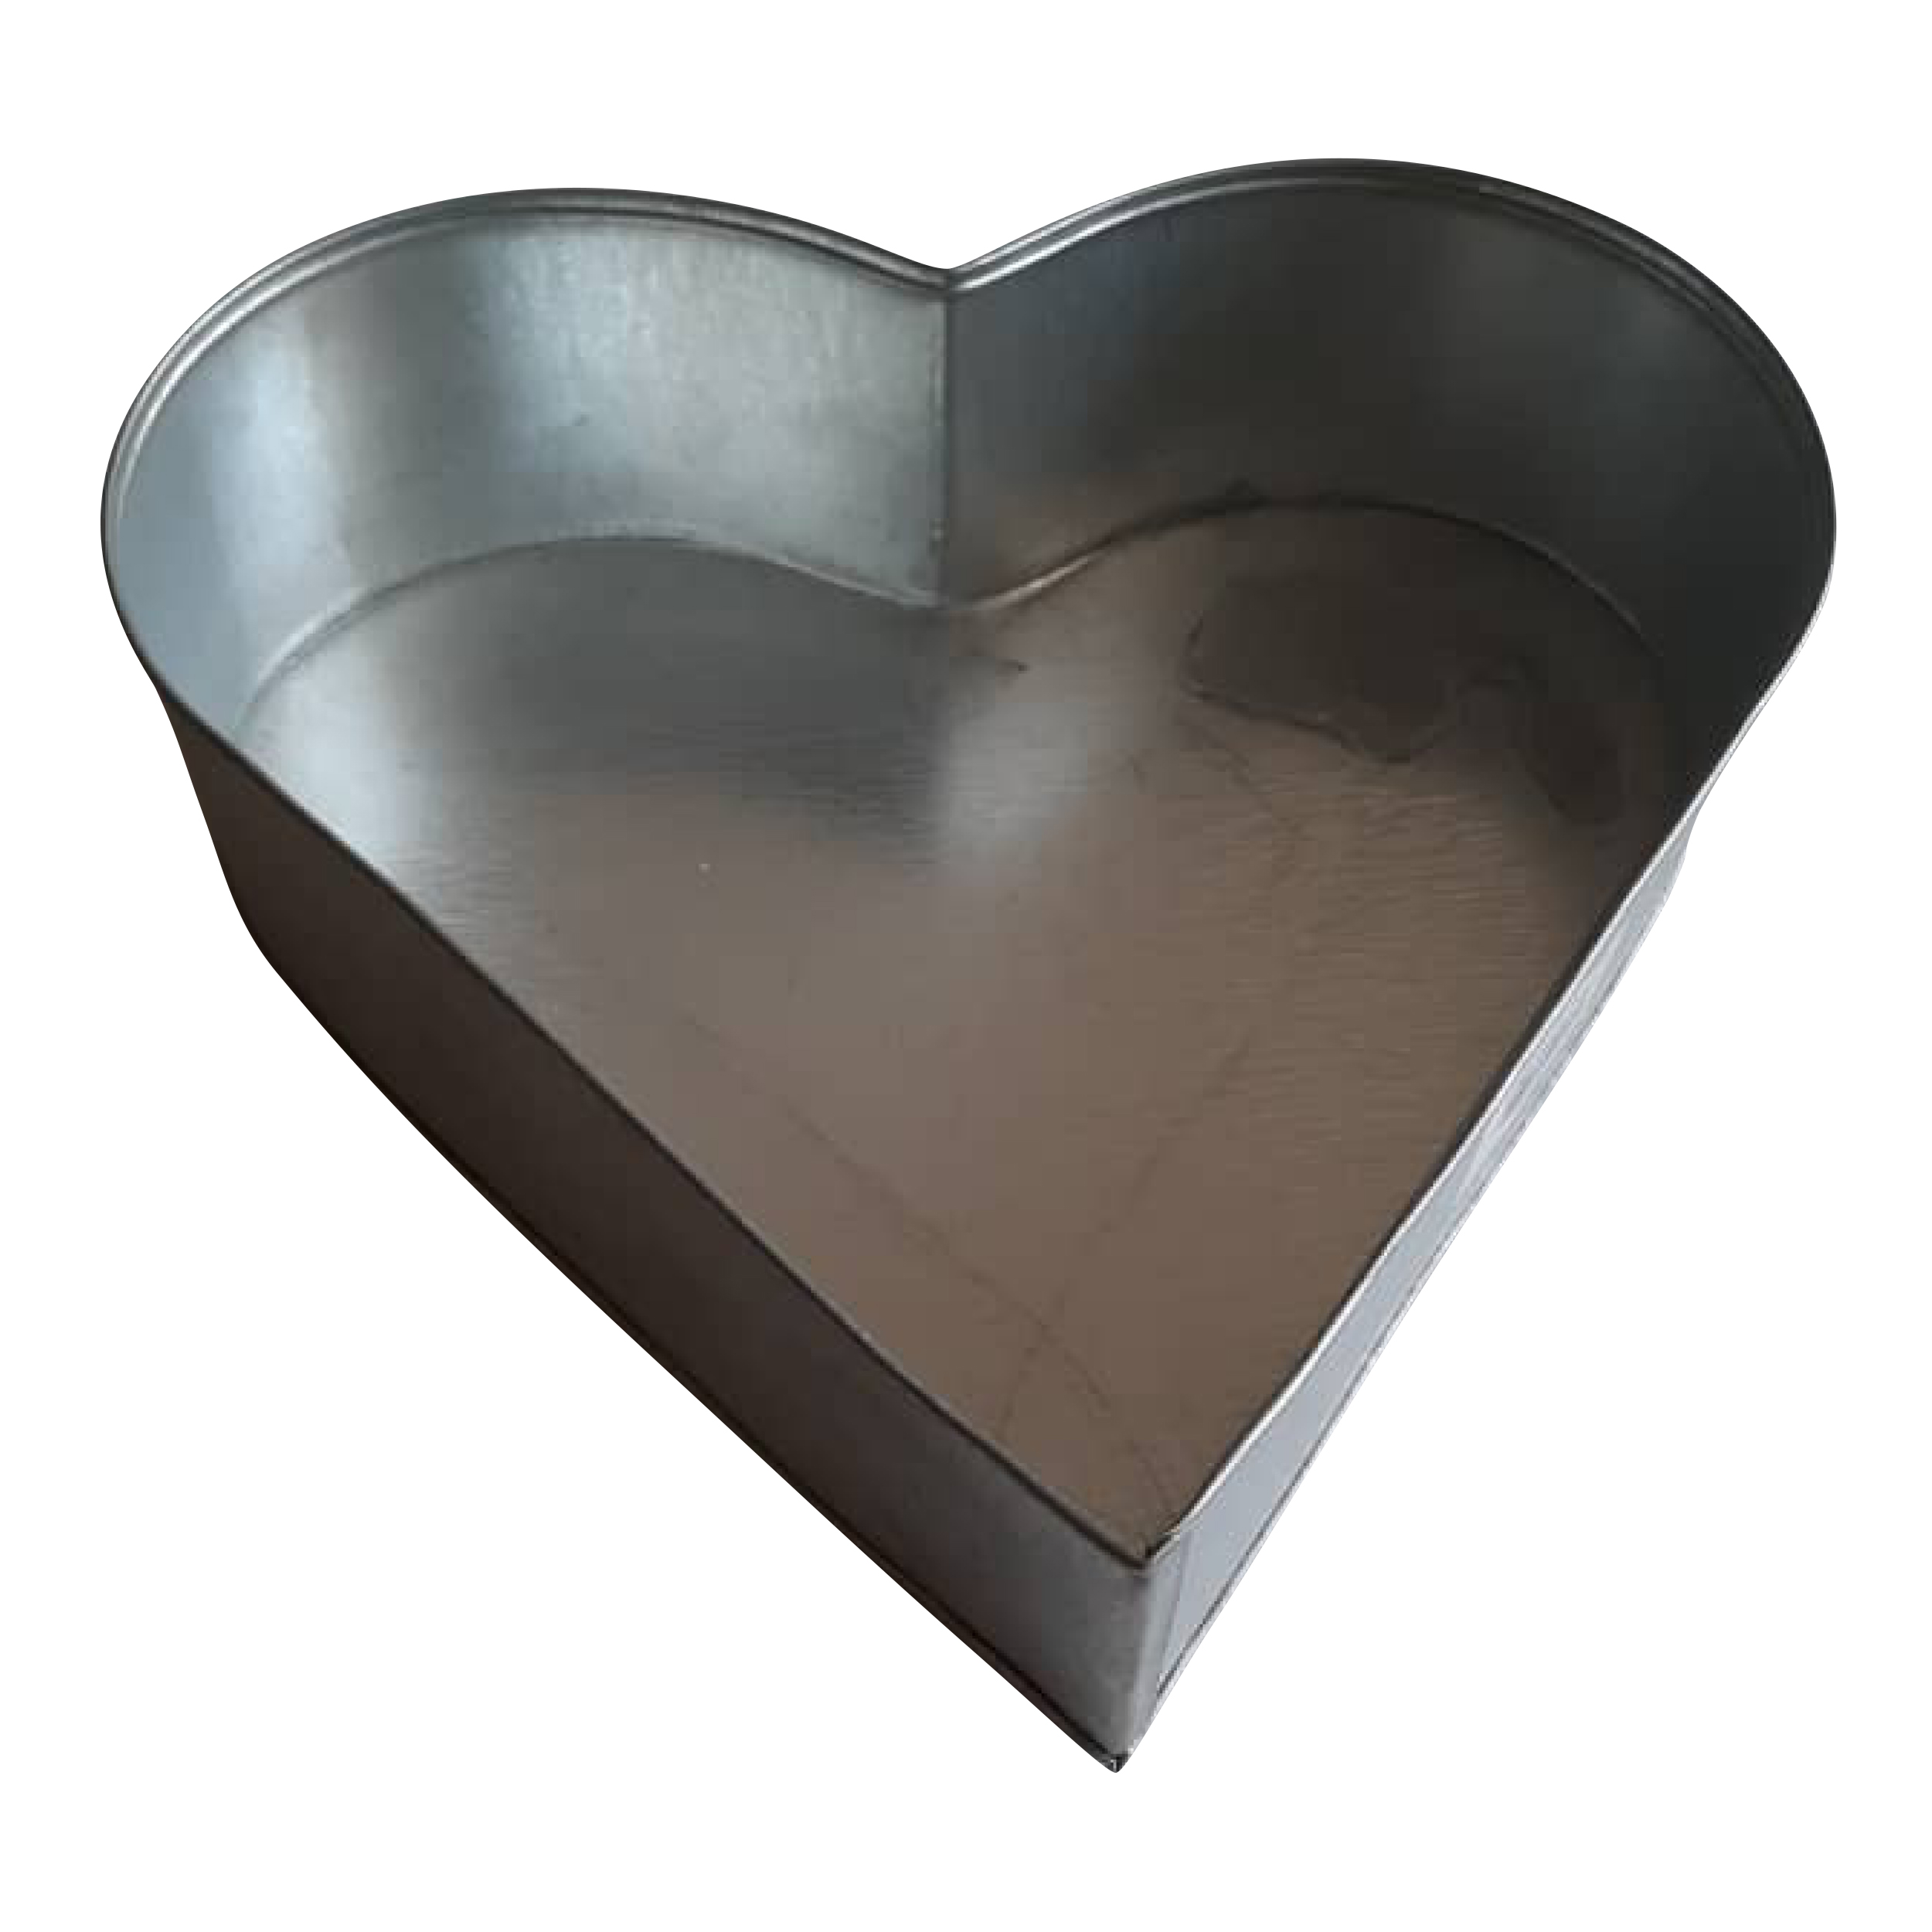 قالب کیک طرح قلب مدل pe480-18